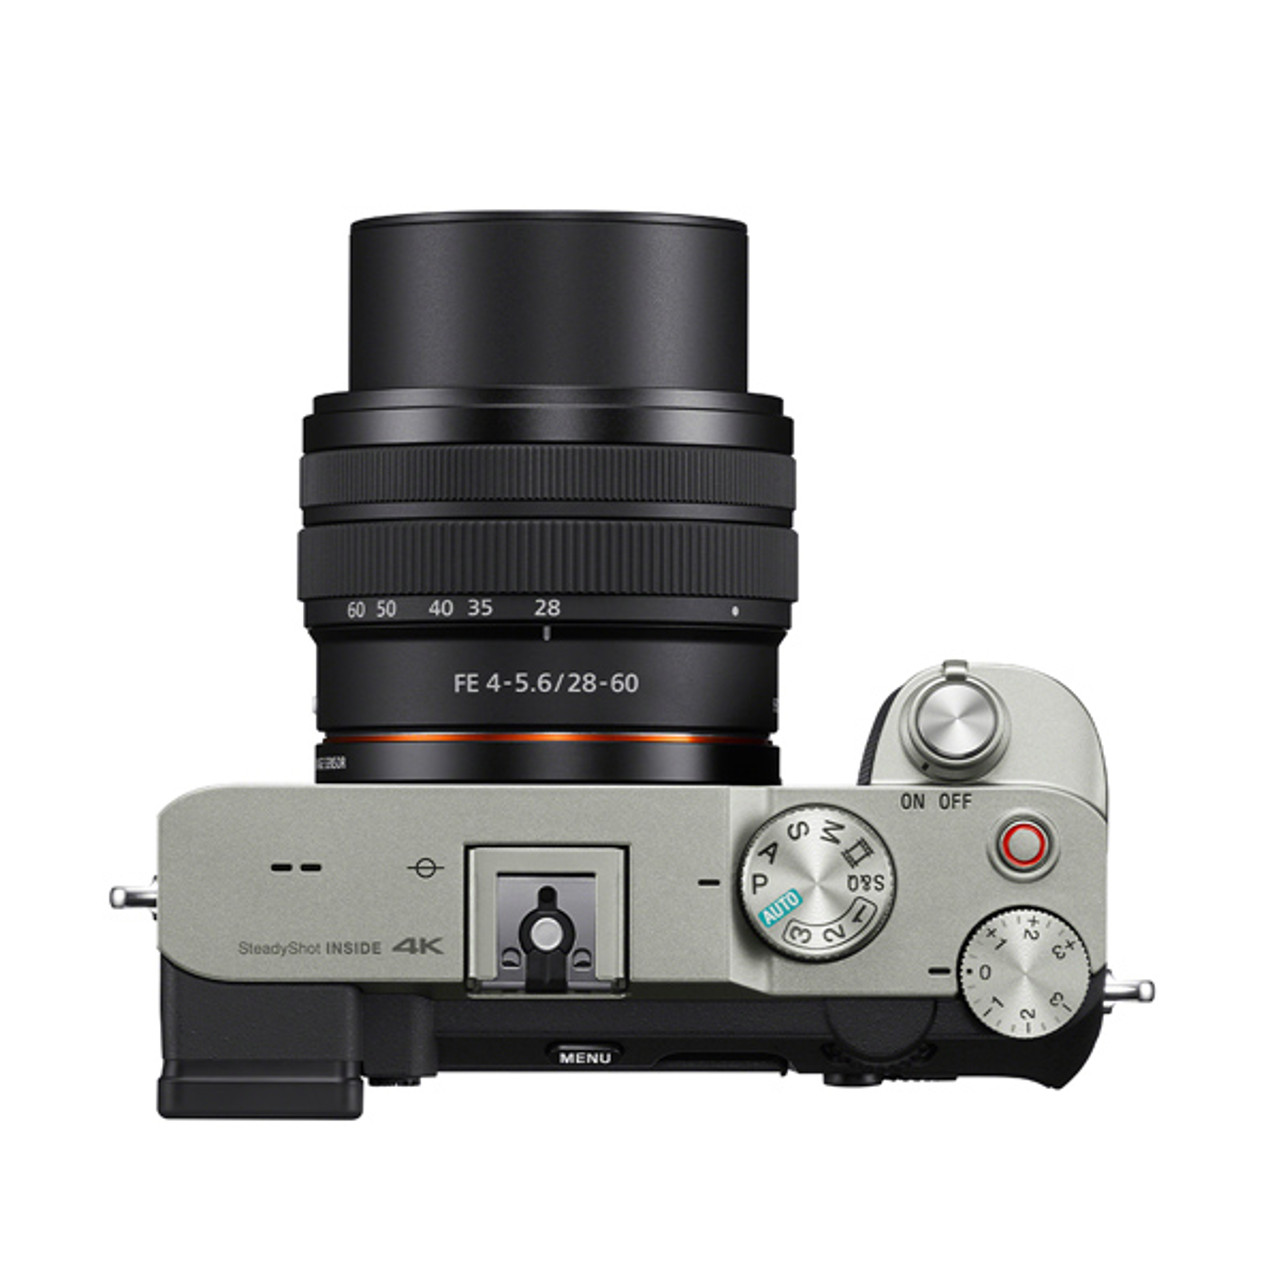 Sony Sel 28-60 f4-5,6 - レンズ(ズーム)